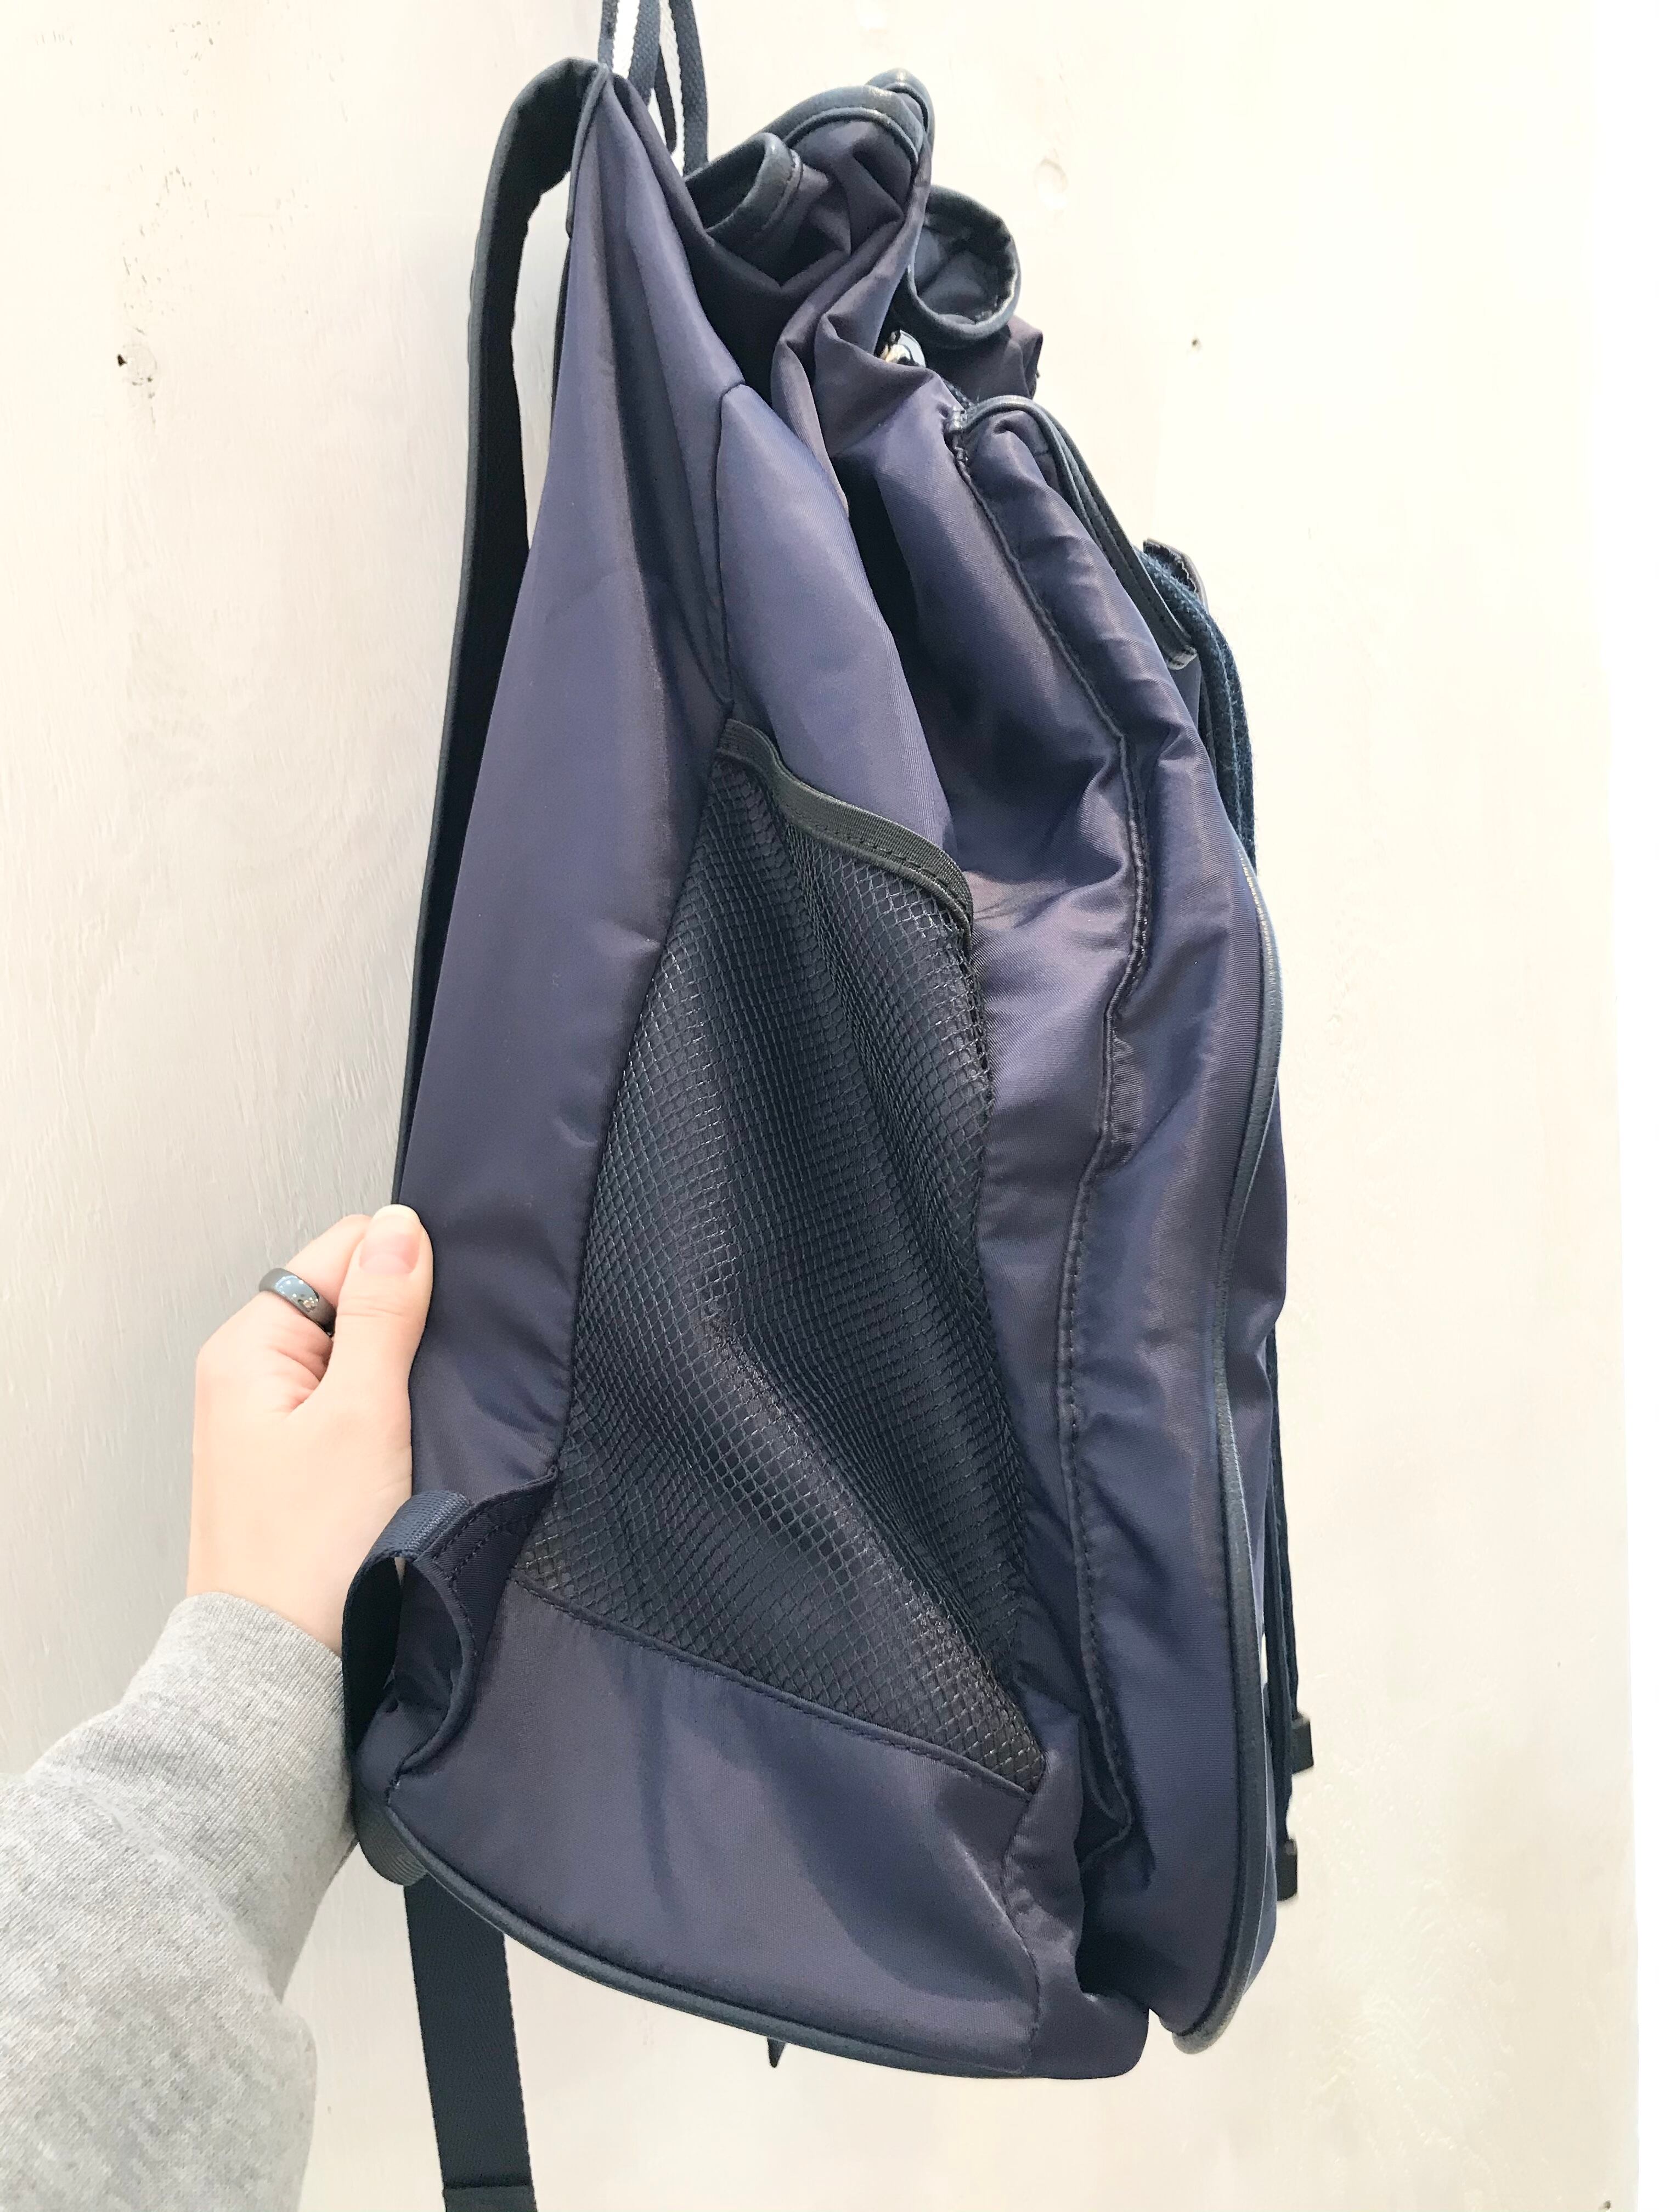 FILA/rucksack/backpack/紺色/巾着型/フィラ/リュックサック/バック ...